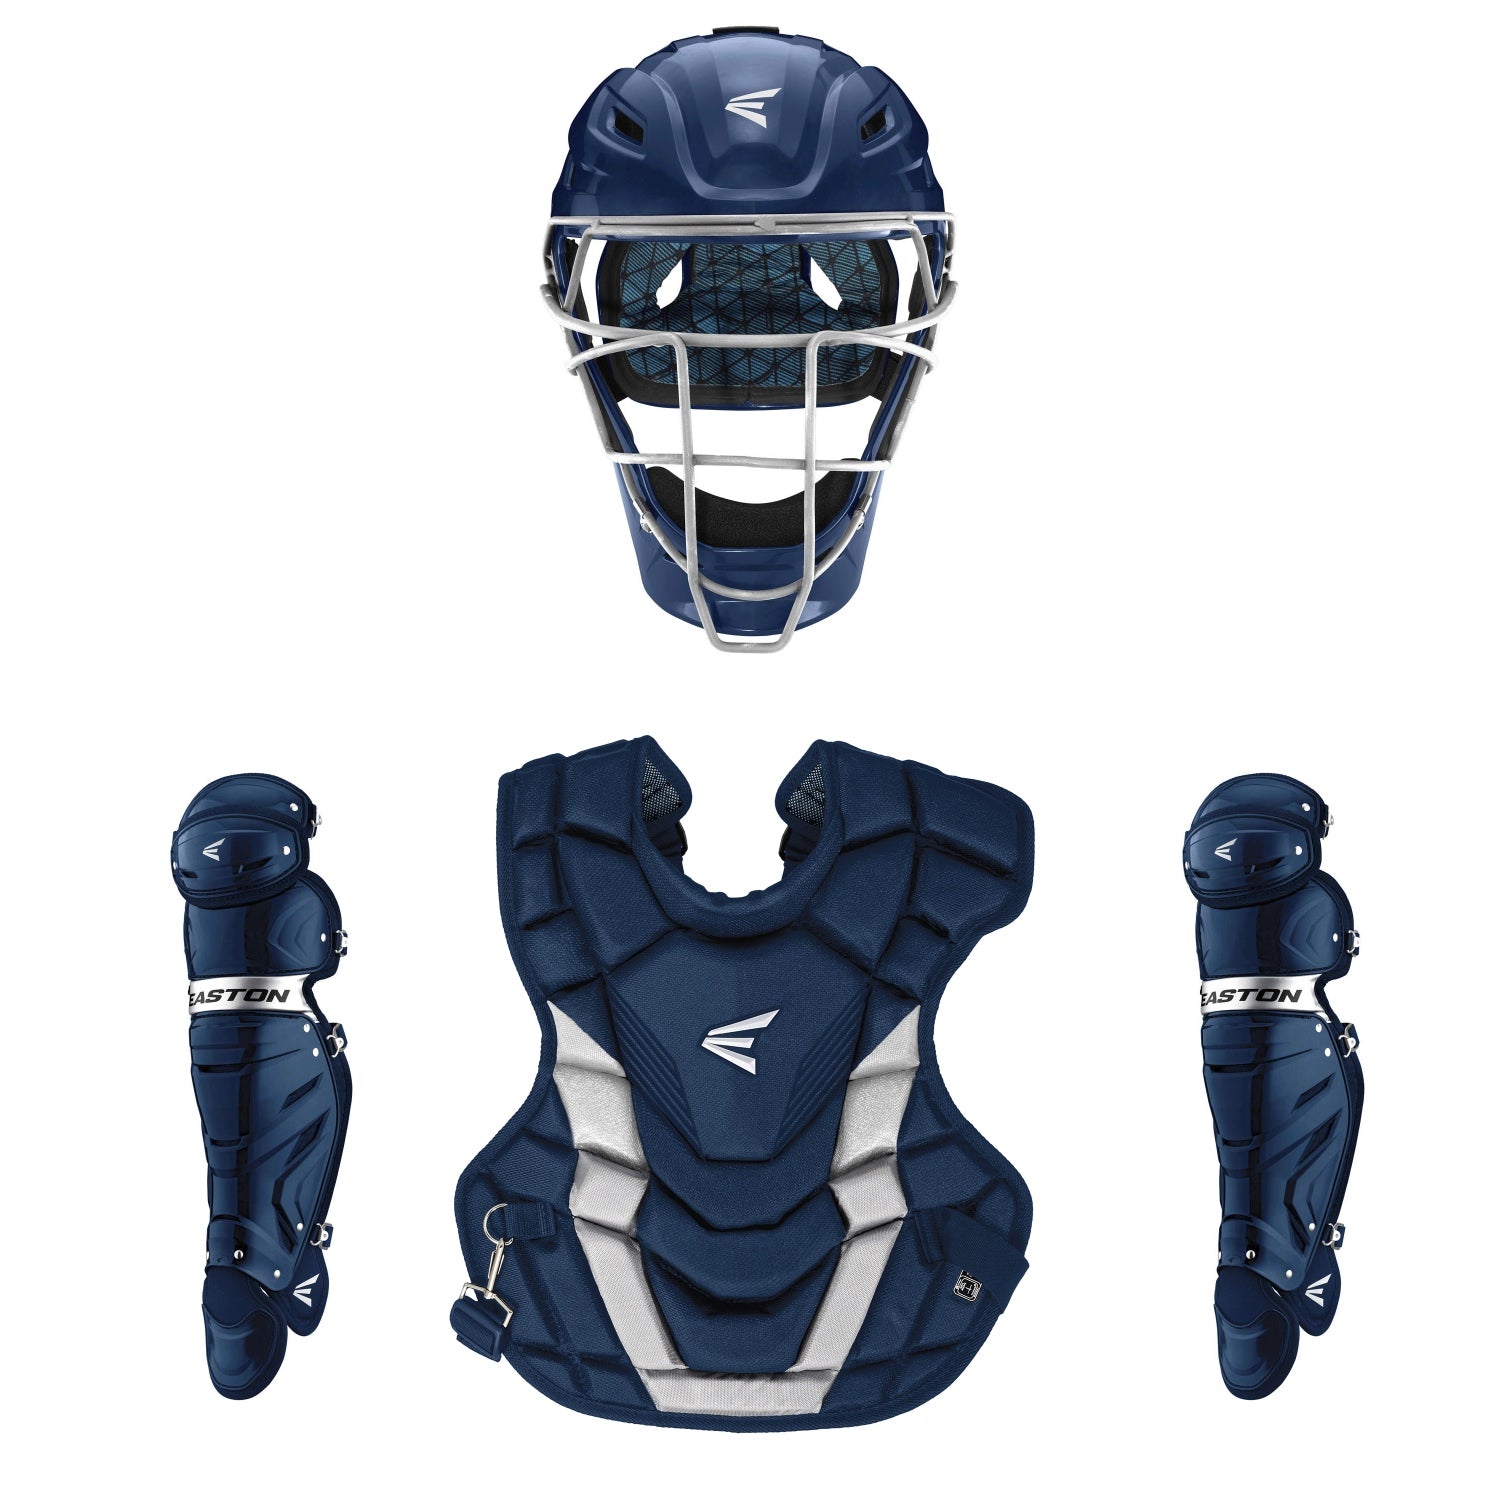 Catcher's Gear in Baseball Gear & Equipment